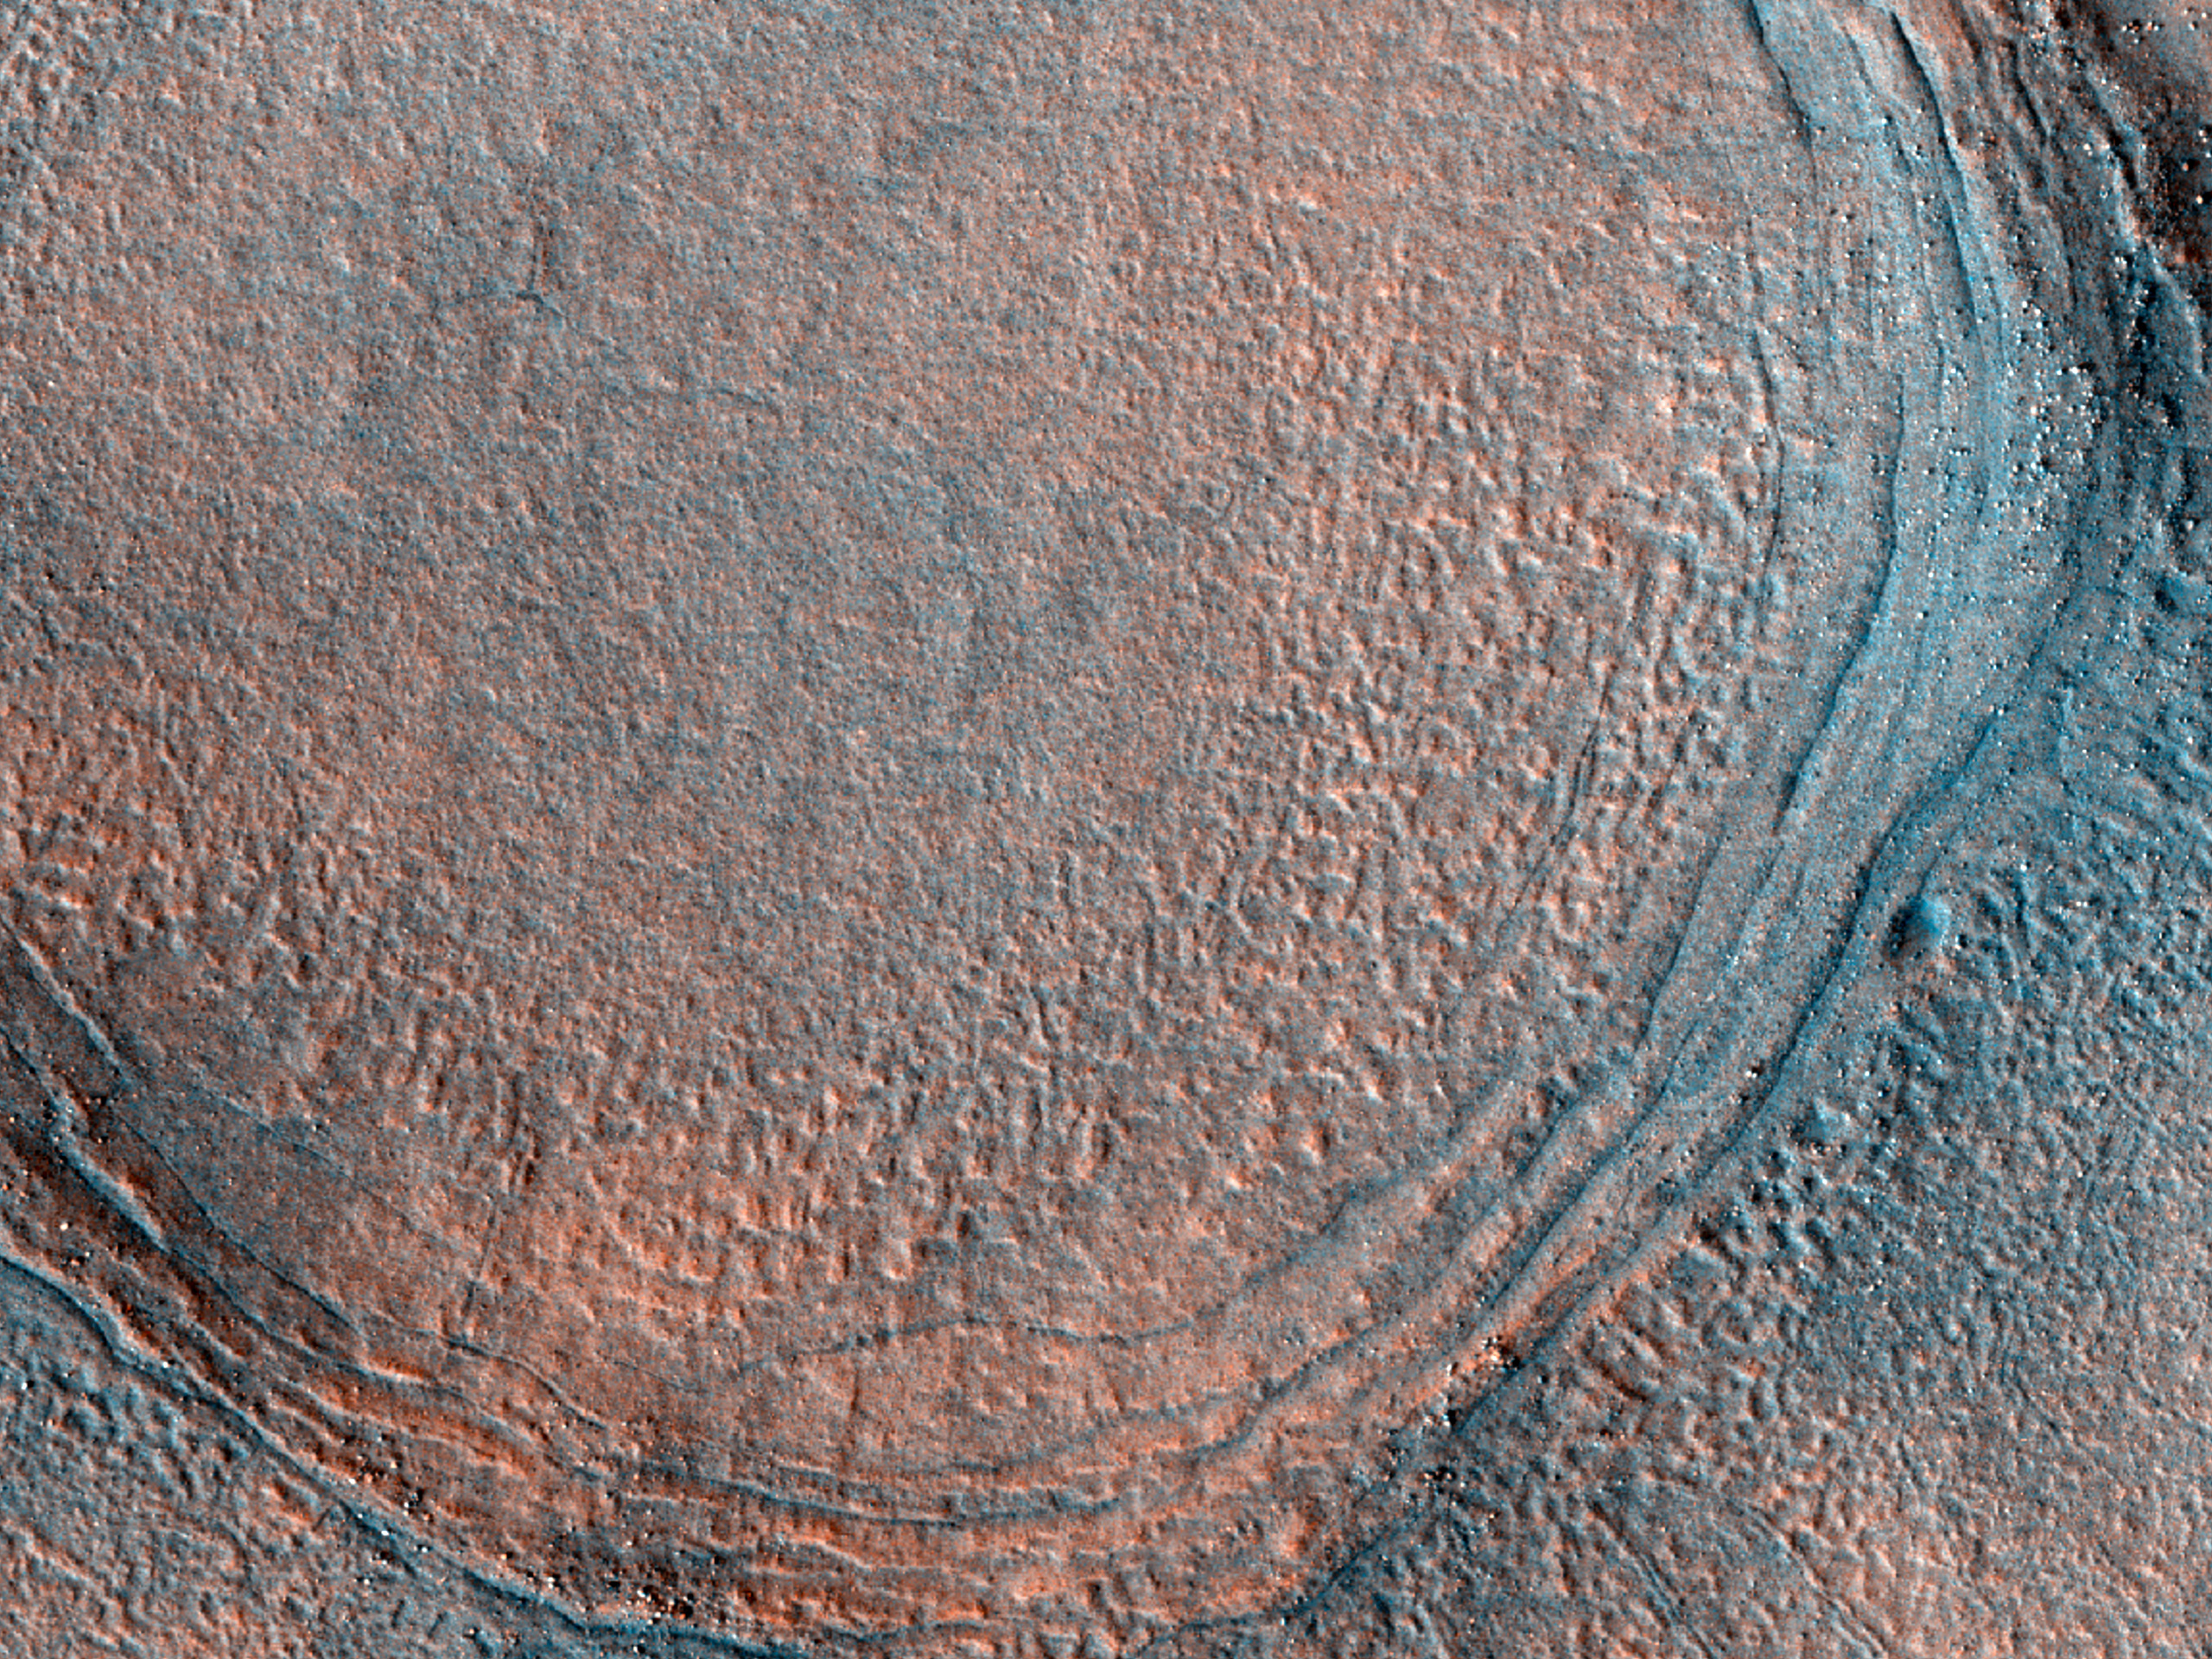 Crater Features in Utopia Planitia